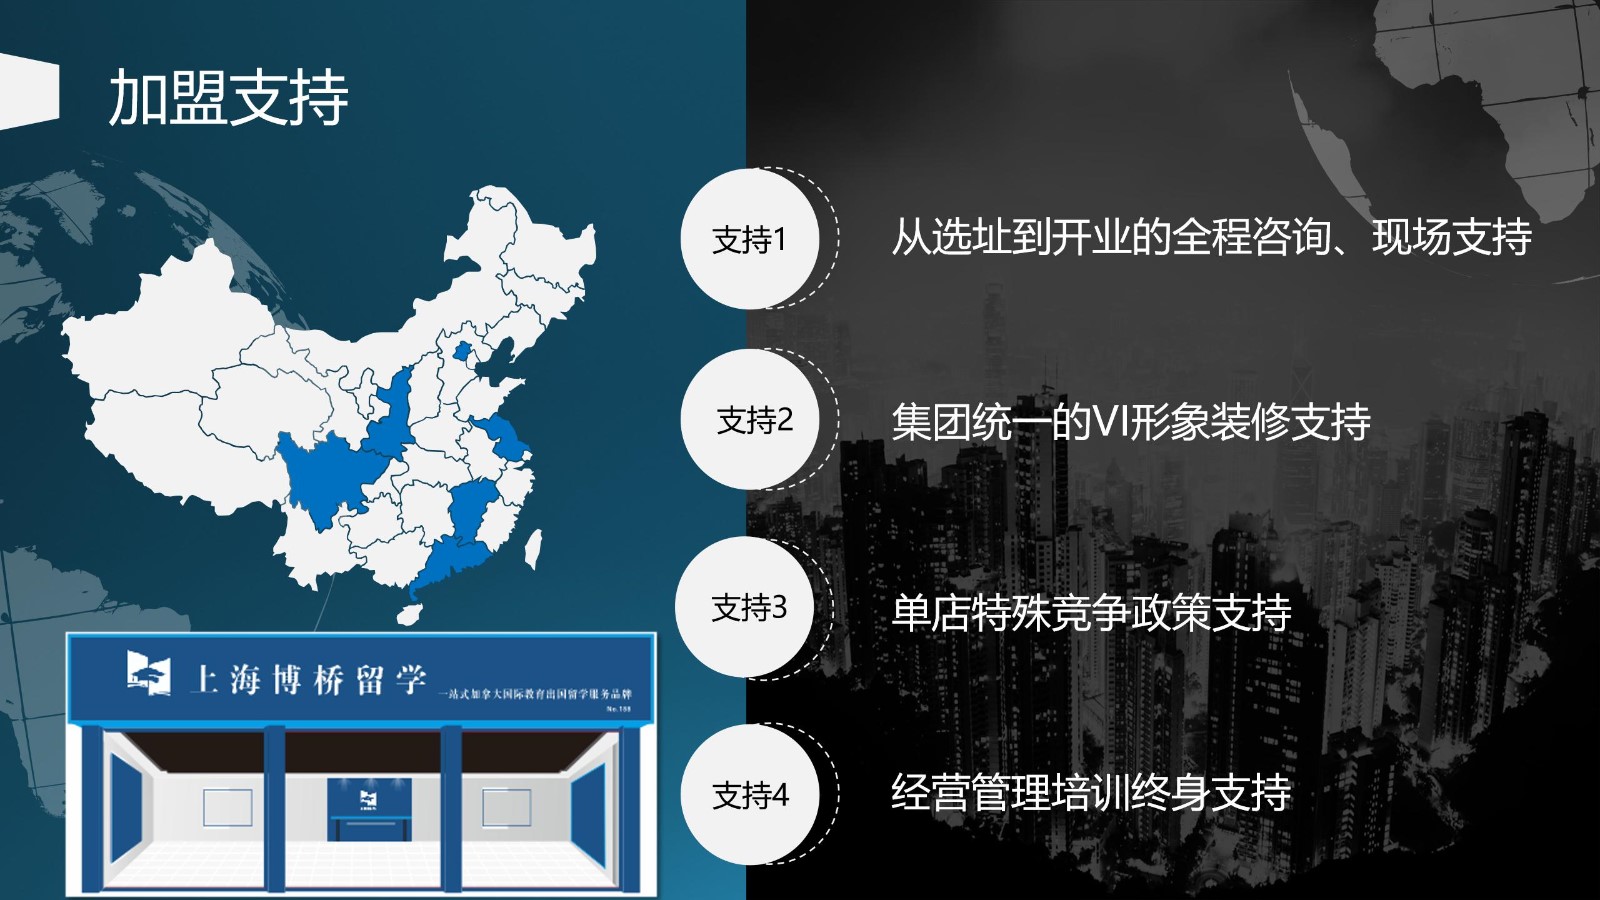 网站用上海博桥留学加盟说明 - 副本_10.jpg